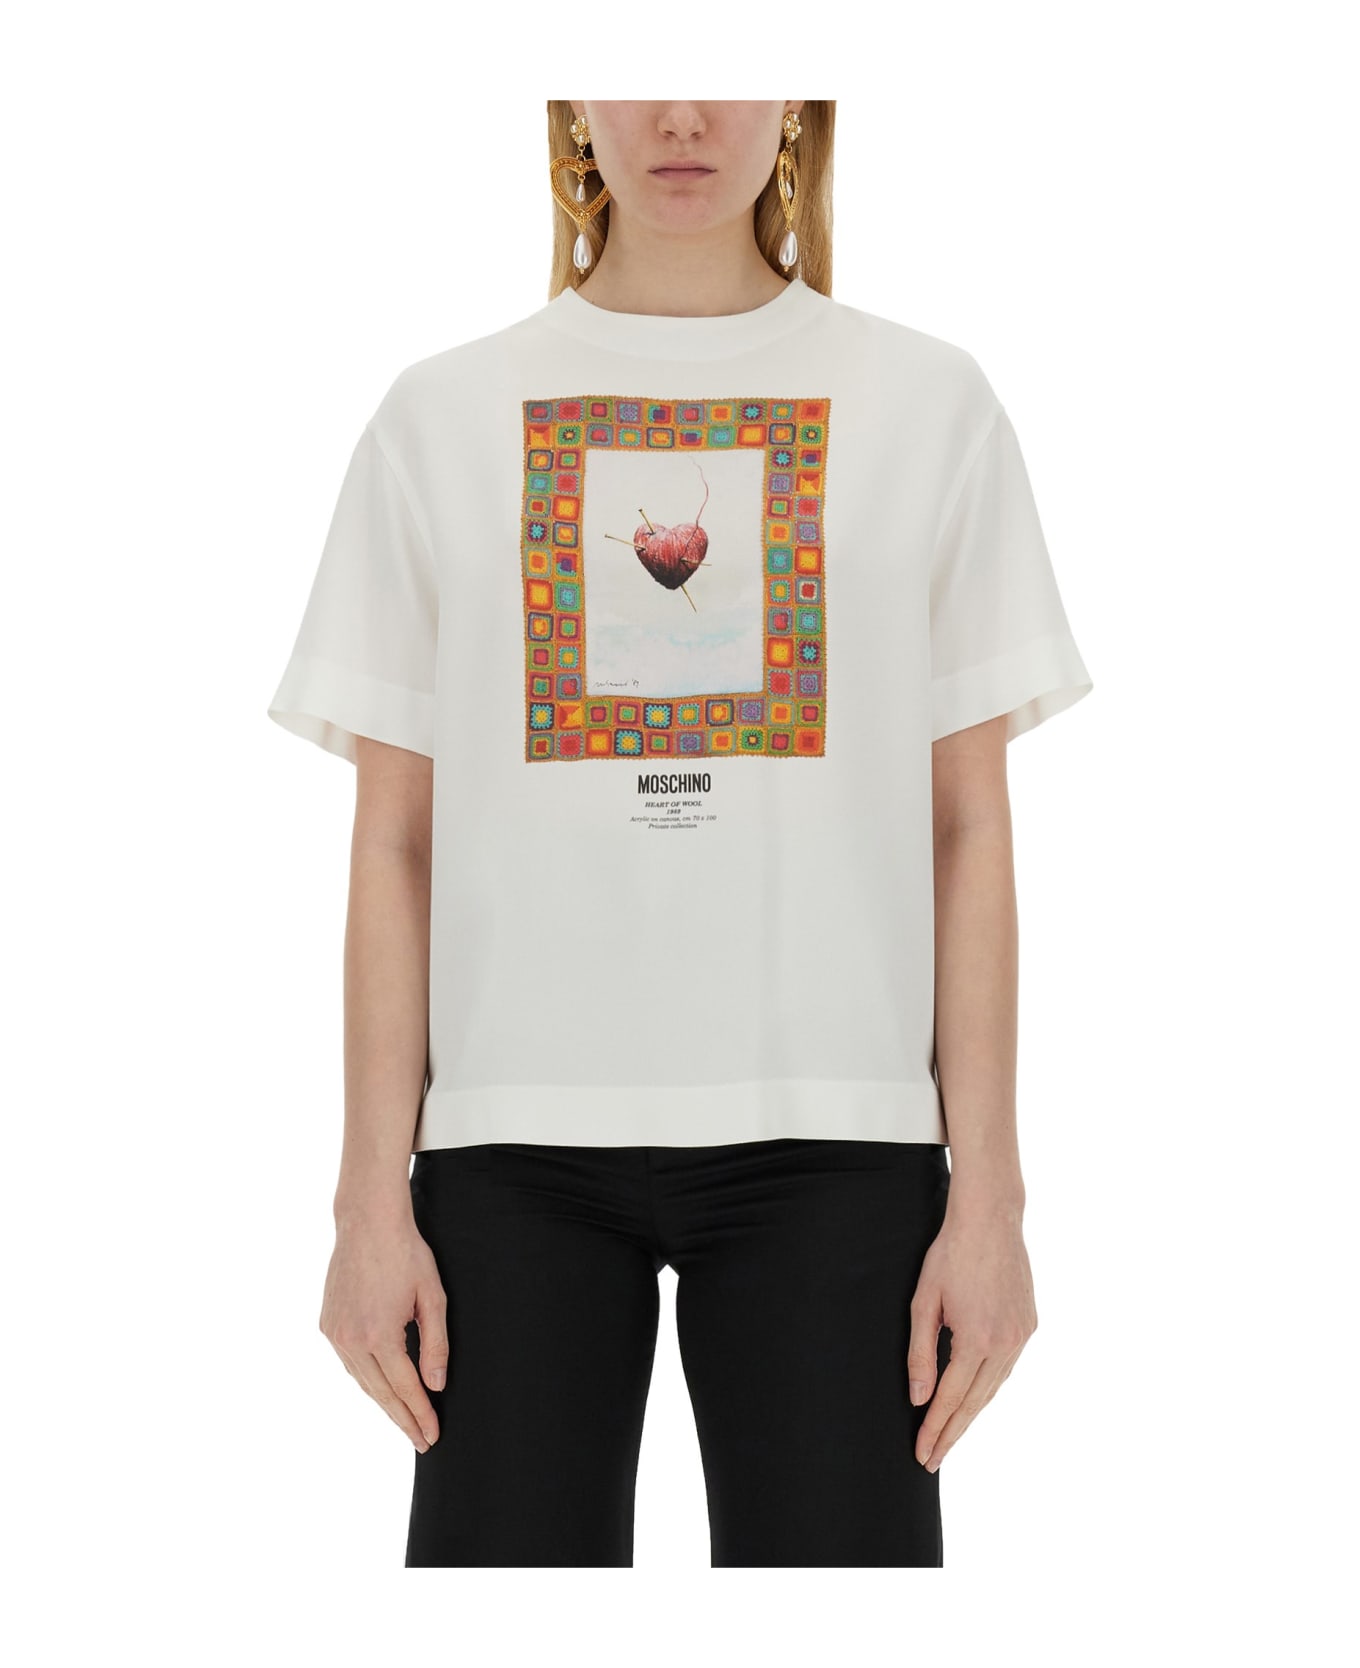 Moschino T-shirt 'heart' - White